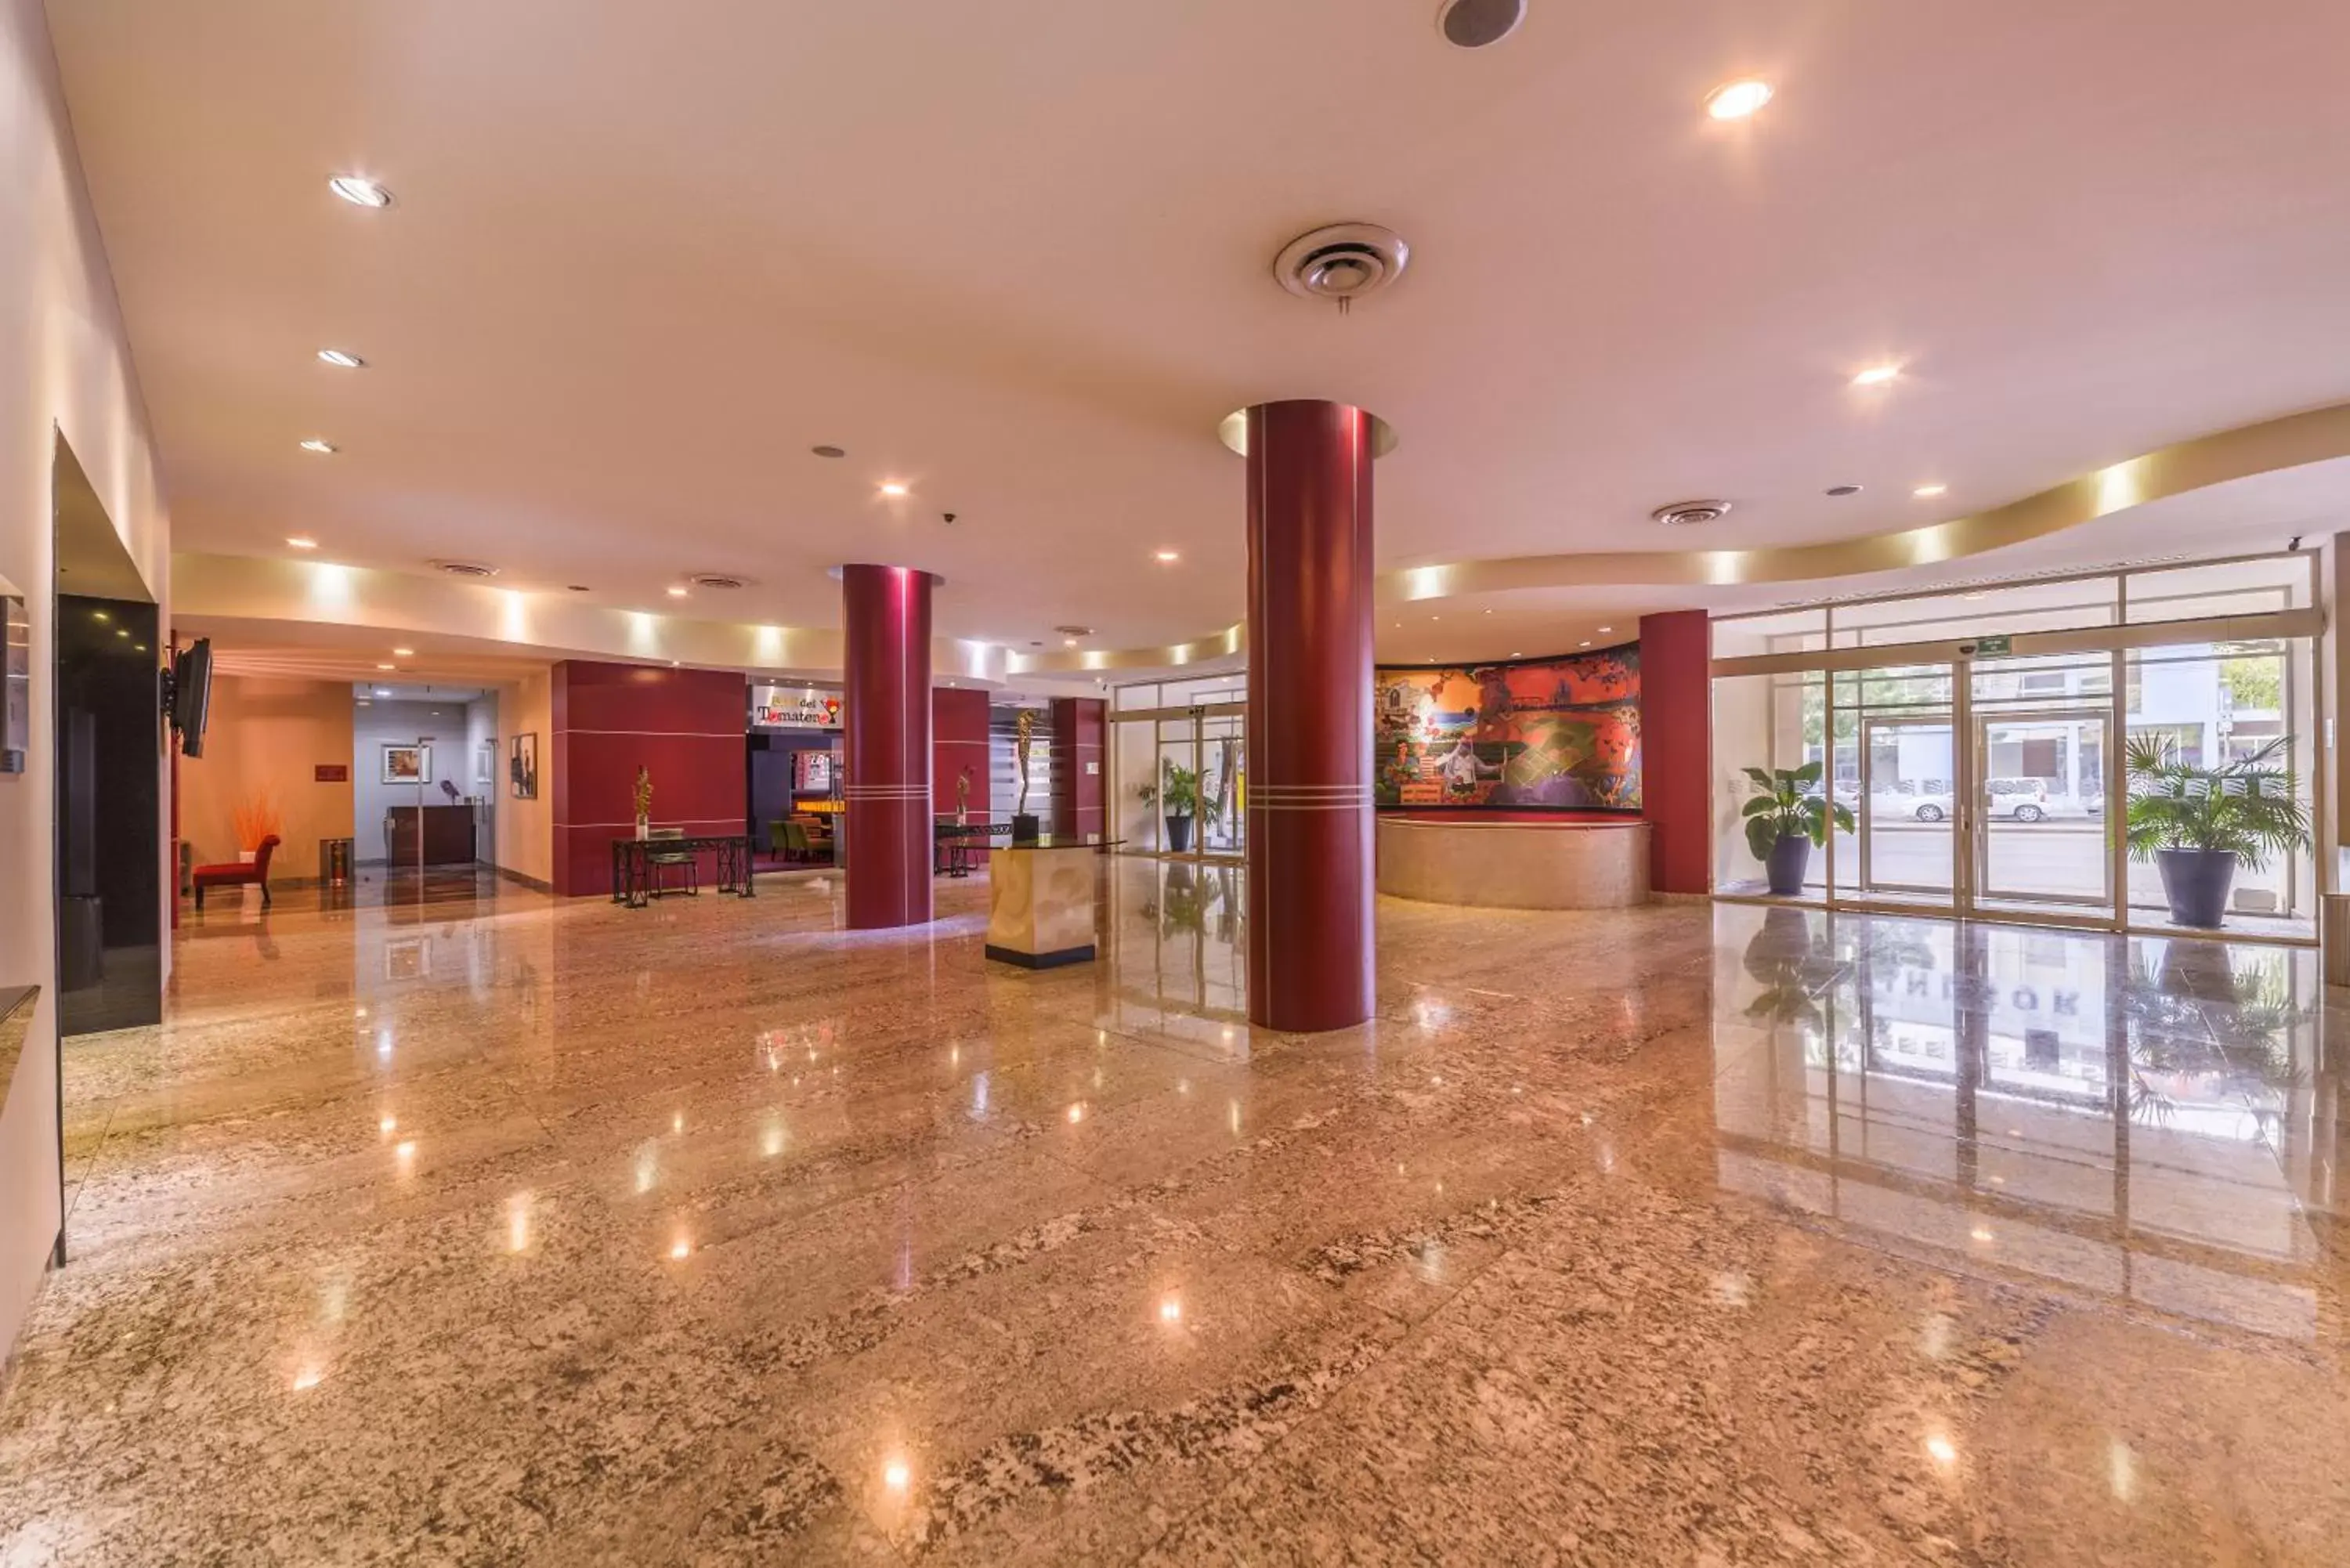 Lobby or reception, Lobby/Reception in Wyndham Executivo Culiacan